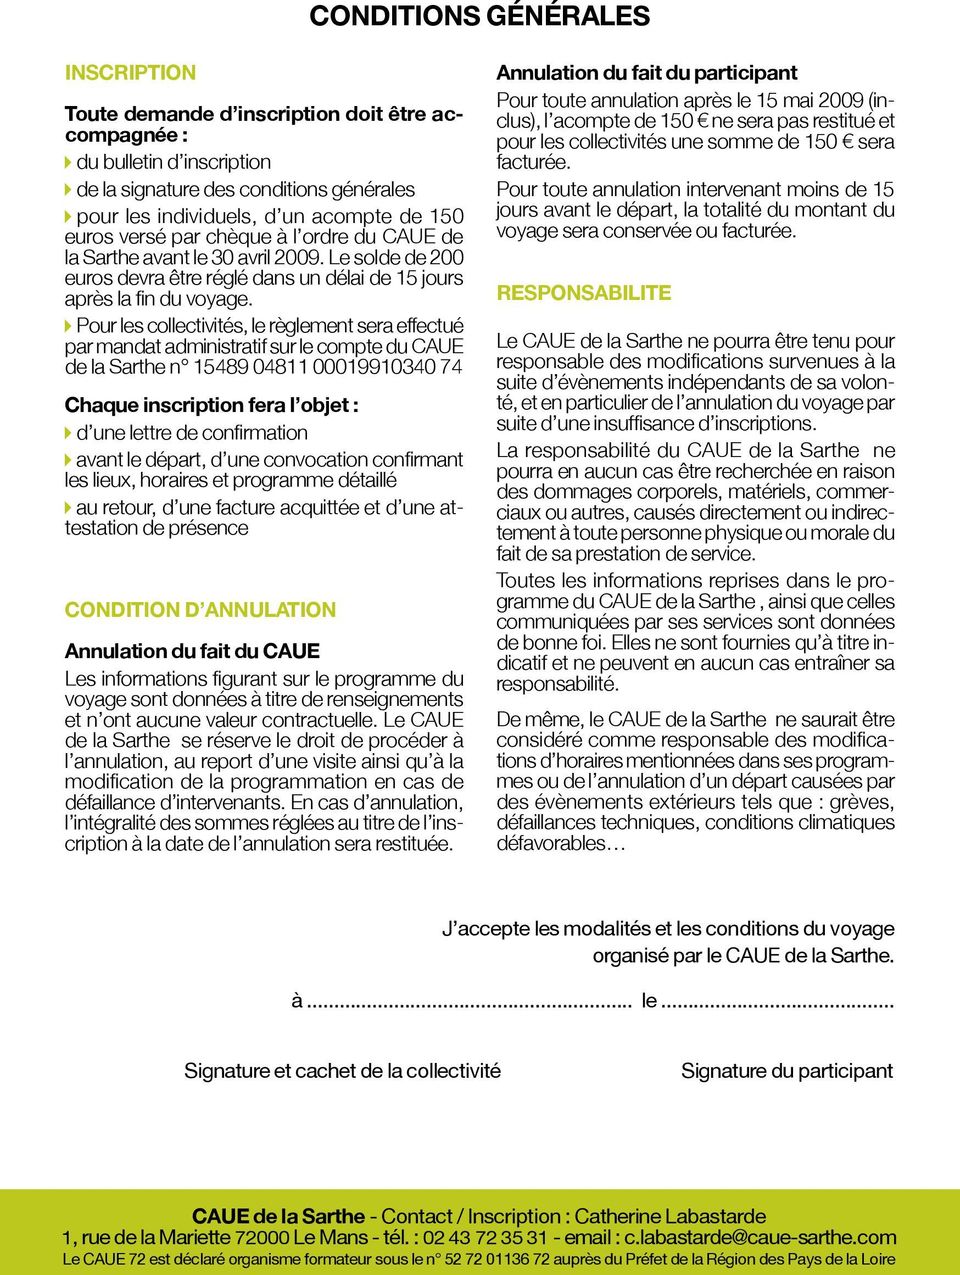 Pour les collectivités, le règlement sera effectué par mandat administratif sur le compte du CAUE de la Sarthe n 15489 04811 00019910340 74 Chaque inscription fera l objet : d une lettre de